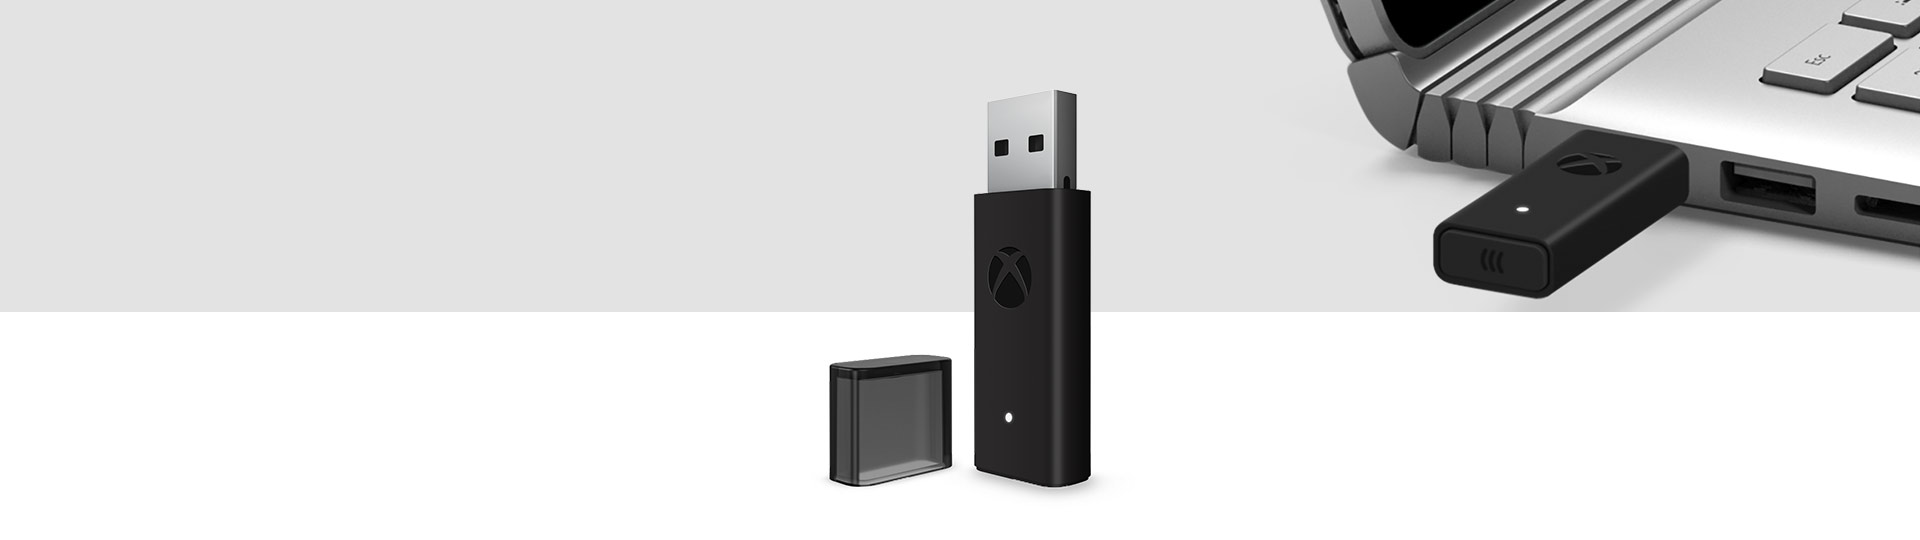 Ασύρματος προσαρμογέας χειριστηρίων Xbox για Windows 10 με συνδεδεμένο ασύρματο προσαρμογέα Xbox σε θύρα USB ενός φορητού υπολογιστή στο φόντο